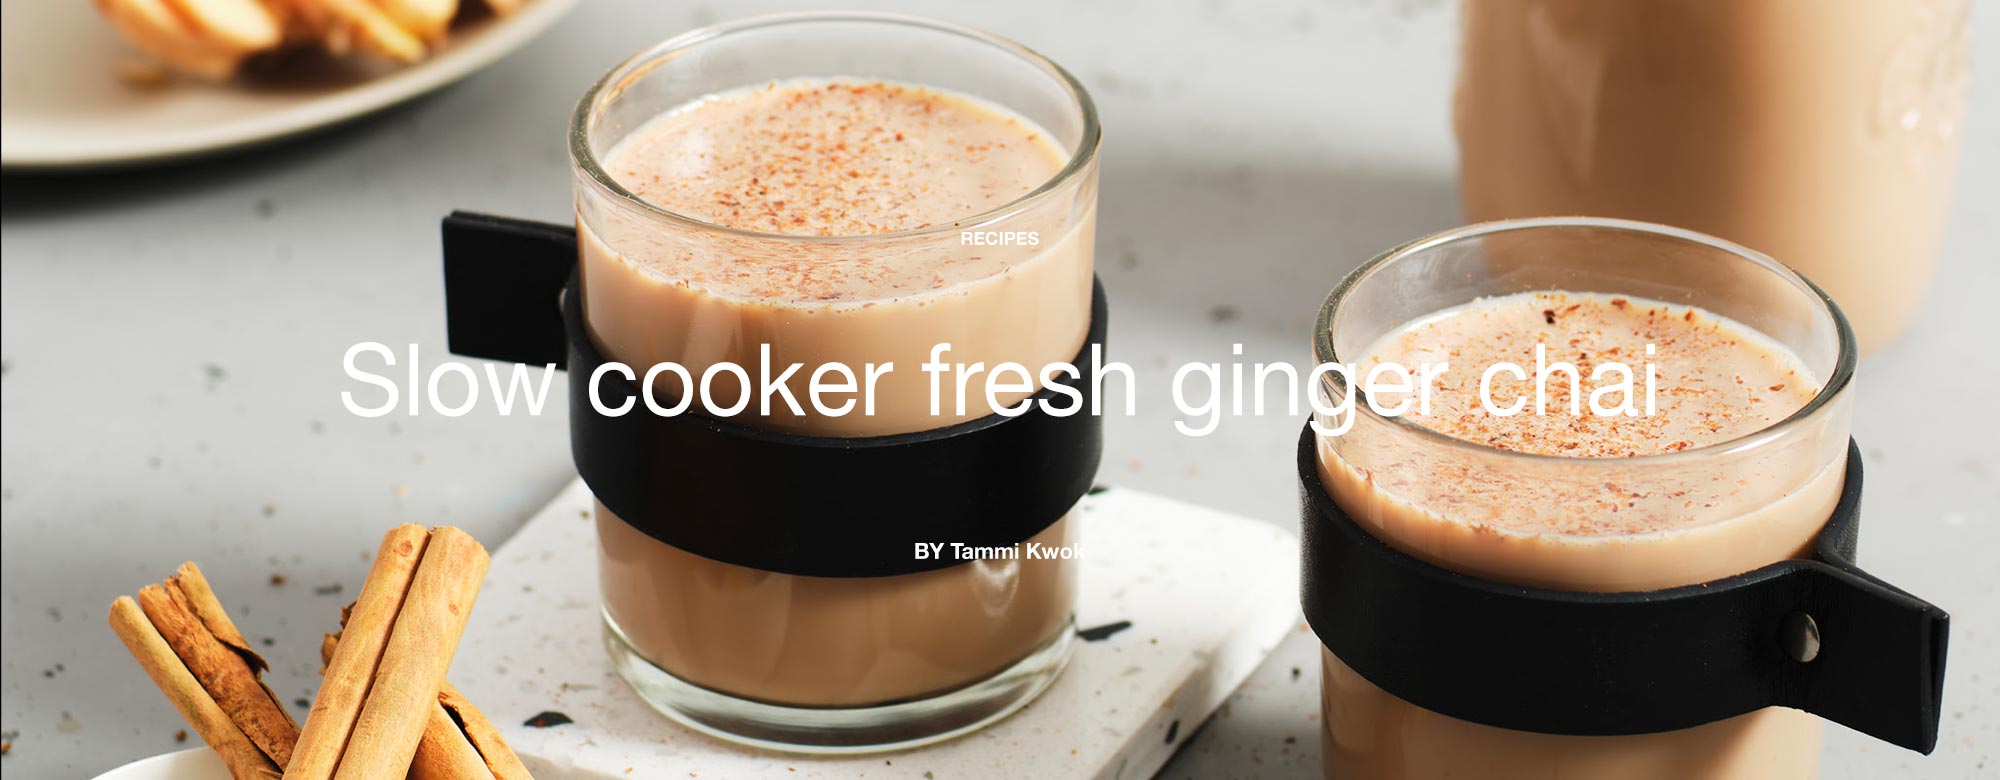 Slow cooker fresh ginger chai